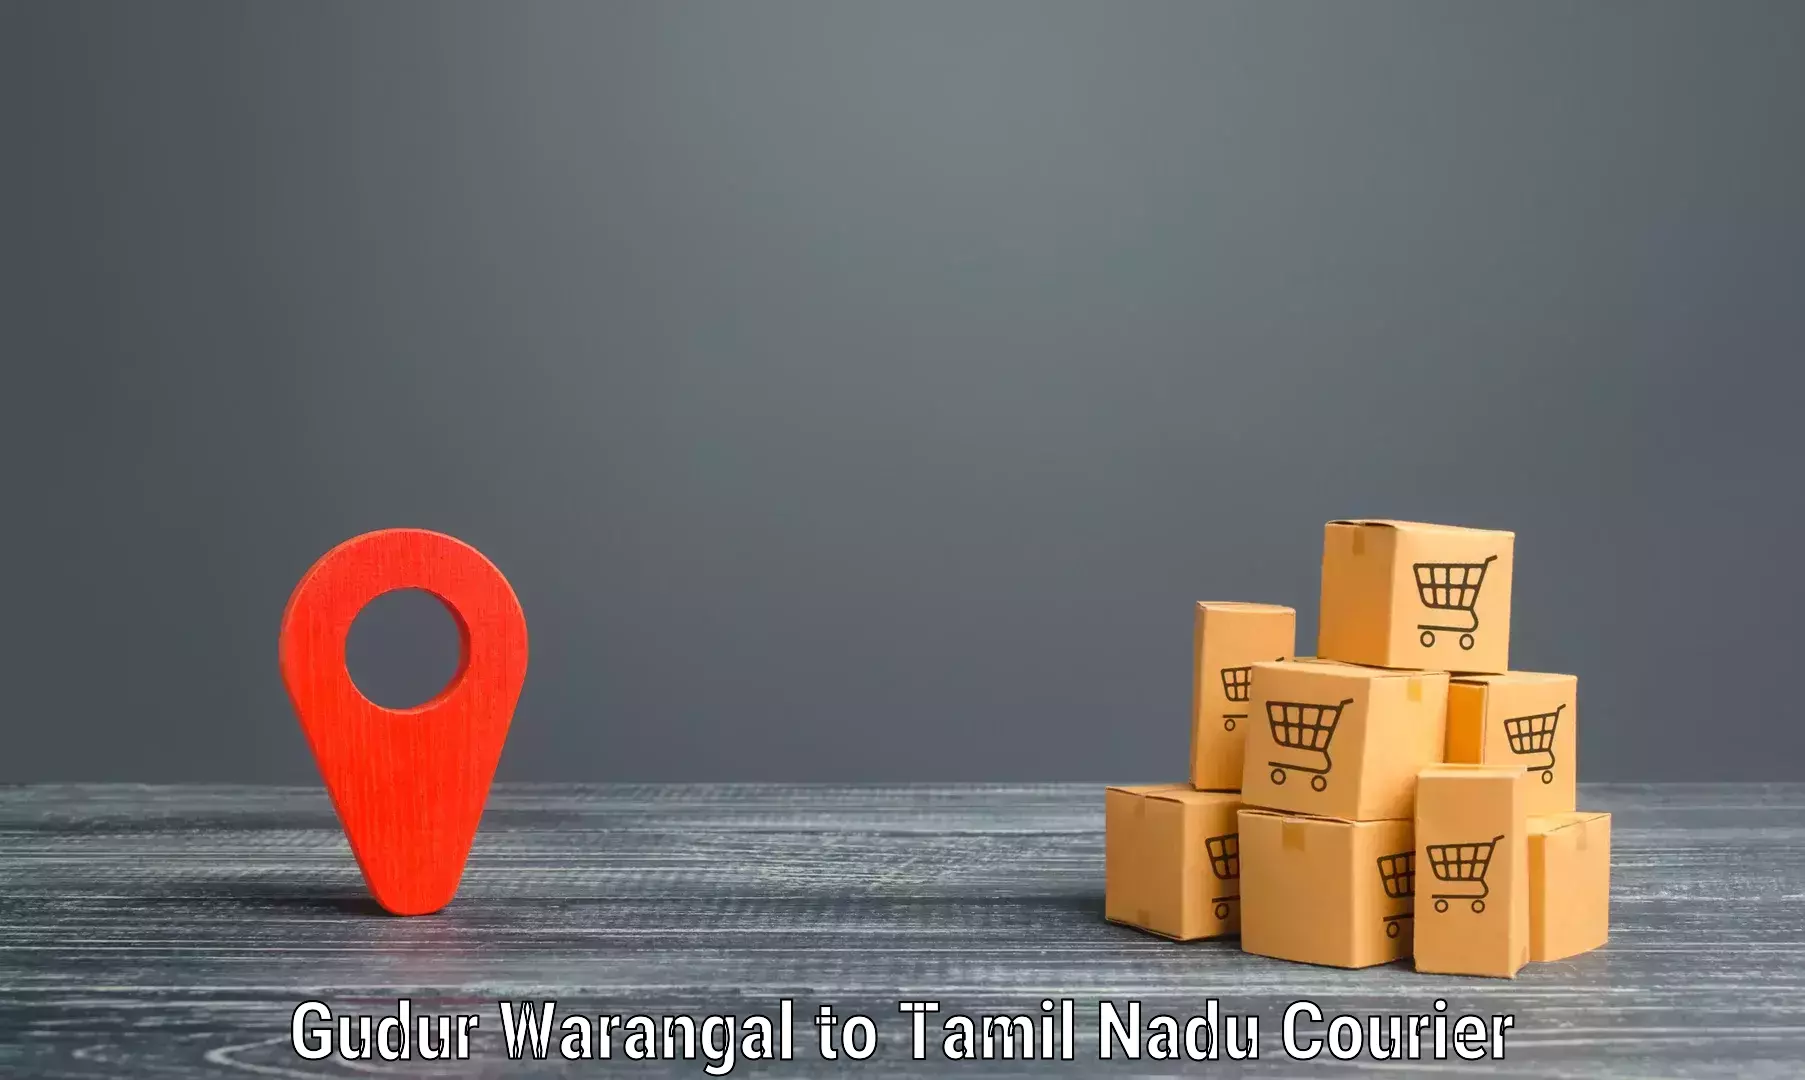 Express logistics Gudur Warangal to Tirupur